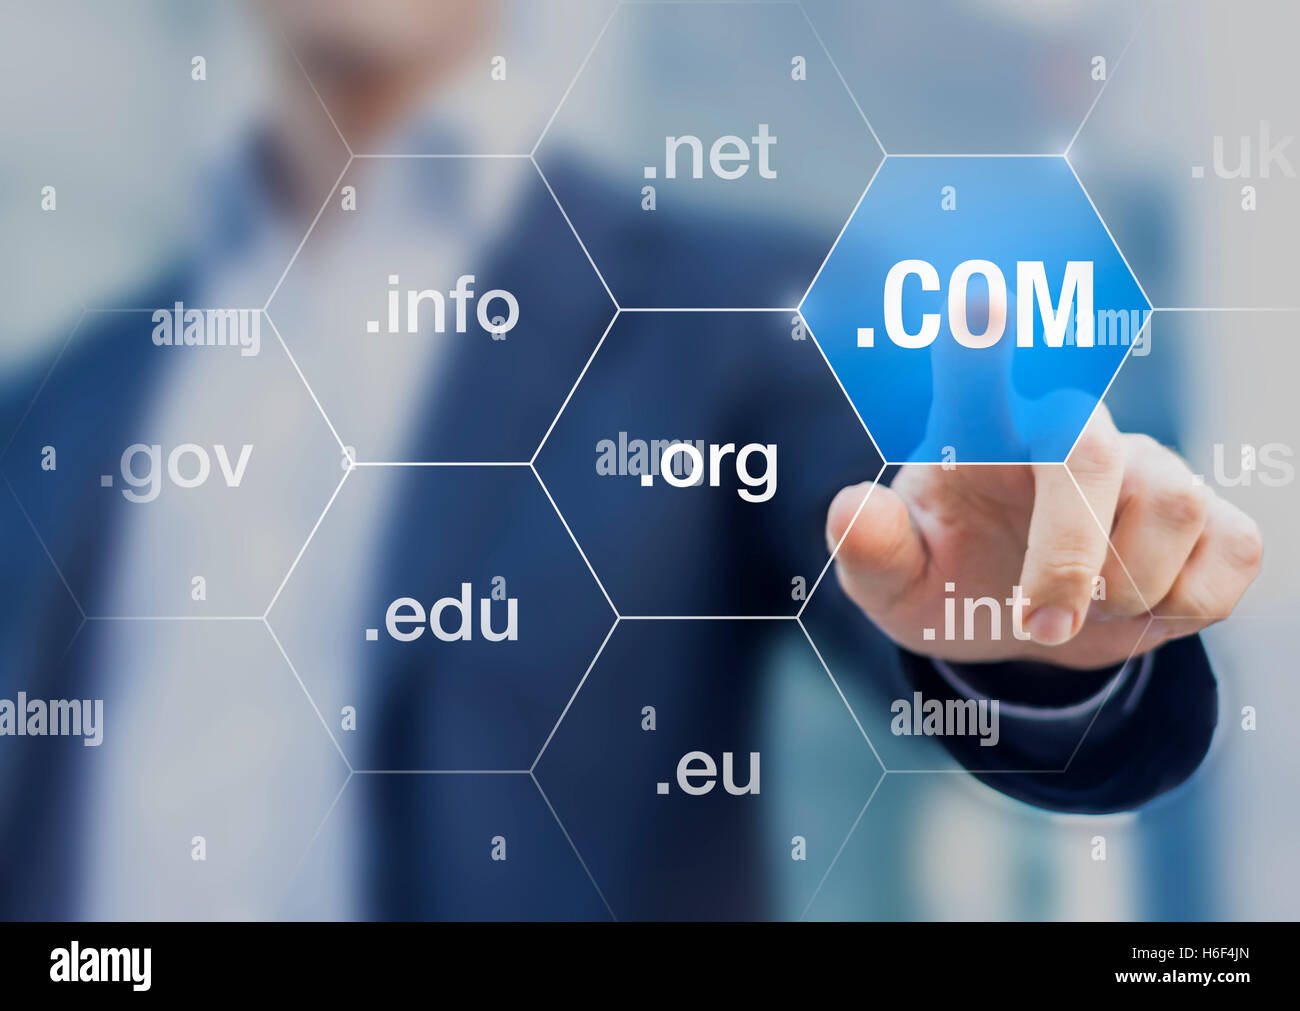 Concetto internazionale circa i nomi di dominio su internet per i siti web su uno schermo, come .com, .org, .net e .info Foto Stock